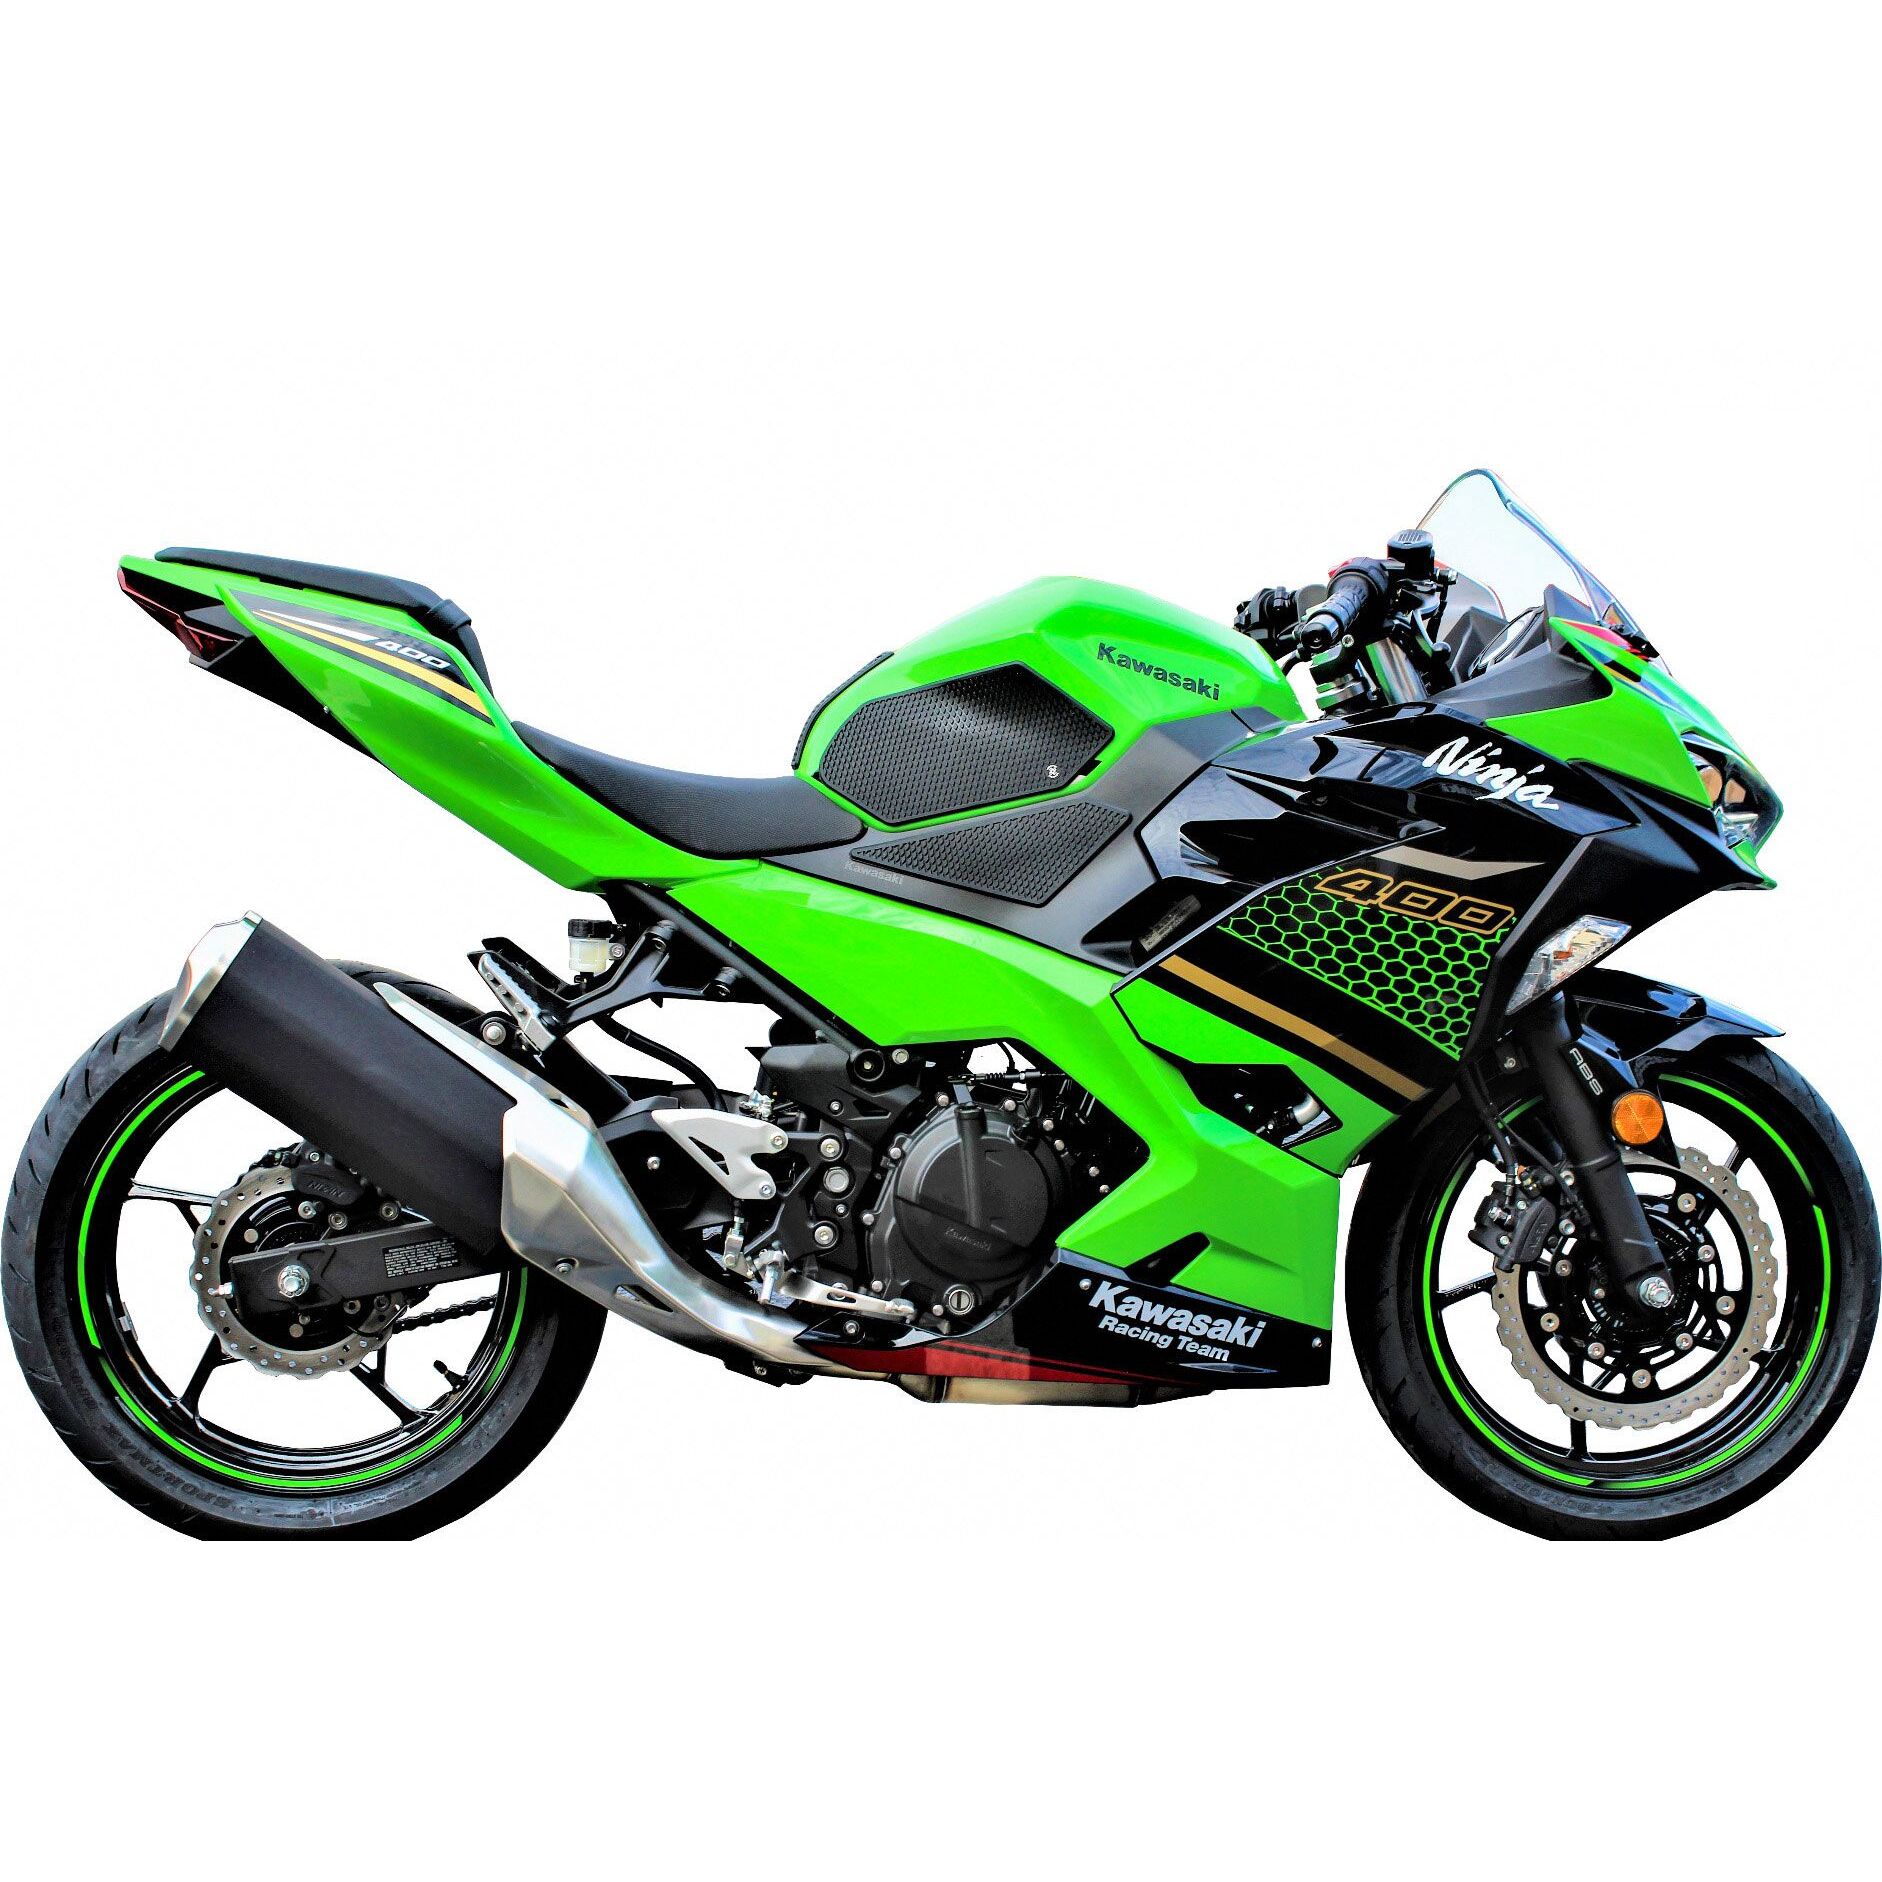 Kawasaki Ninja 400cc Carbon Fiber Fuel Tank Protectors